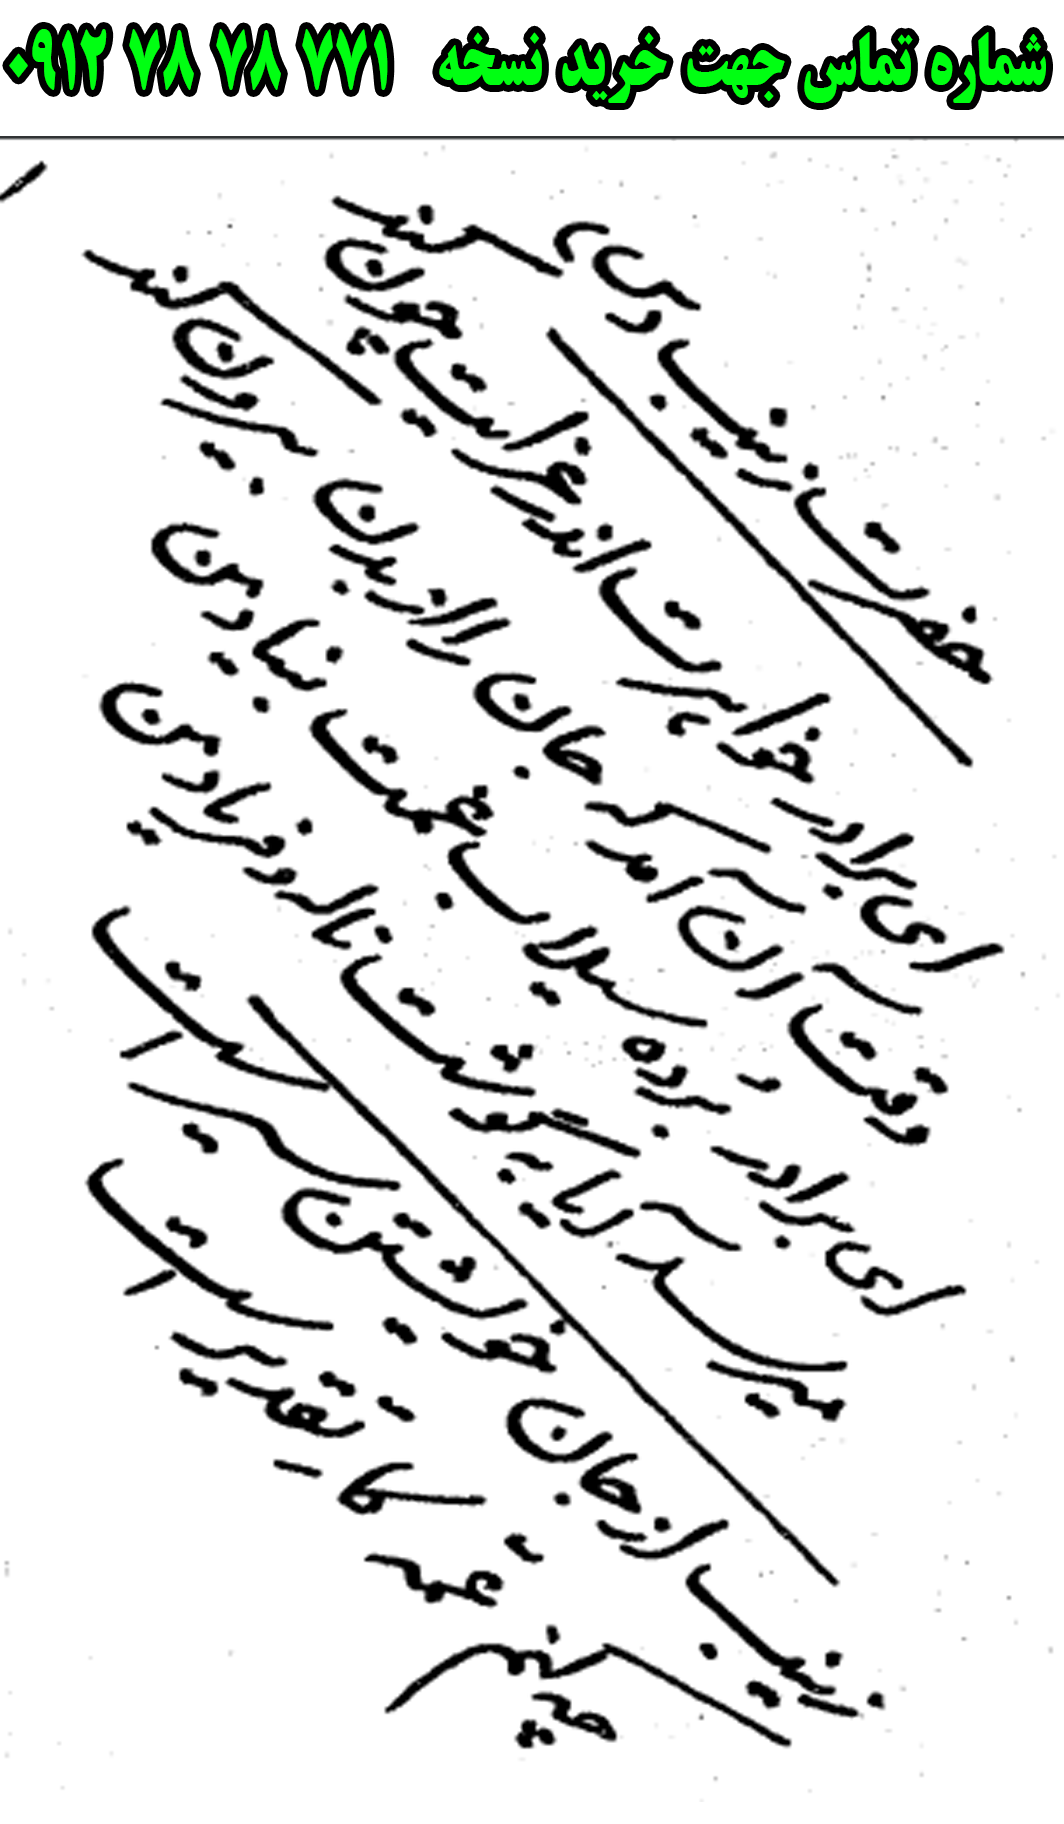 ارسال پستی نسخه تعزیه کامل حضرت زینب در تعزیه ی وفات زینب به کل کشور 09127878771